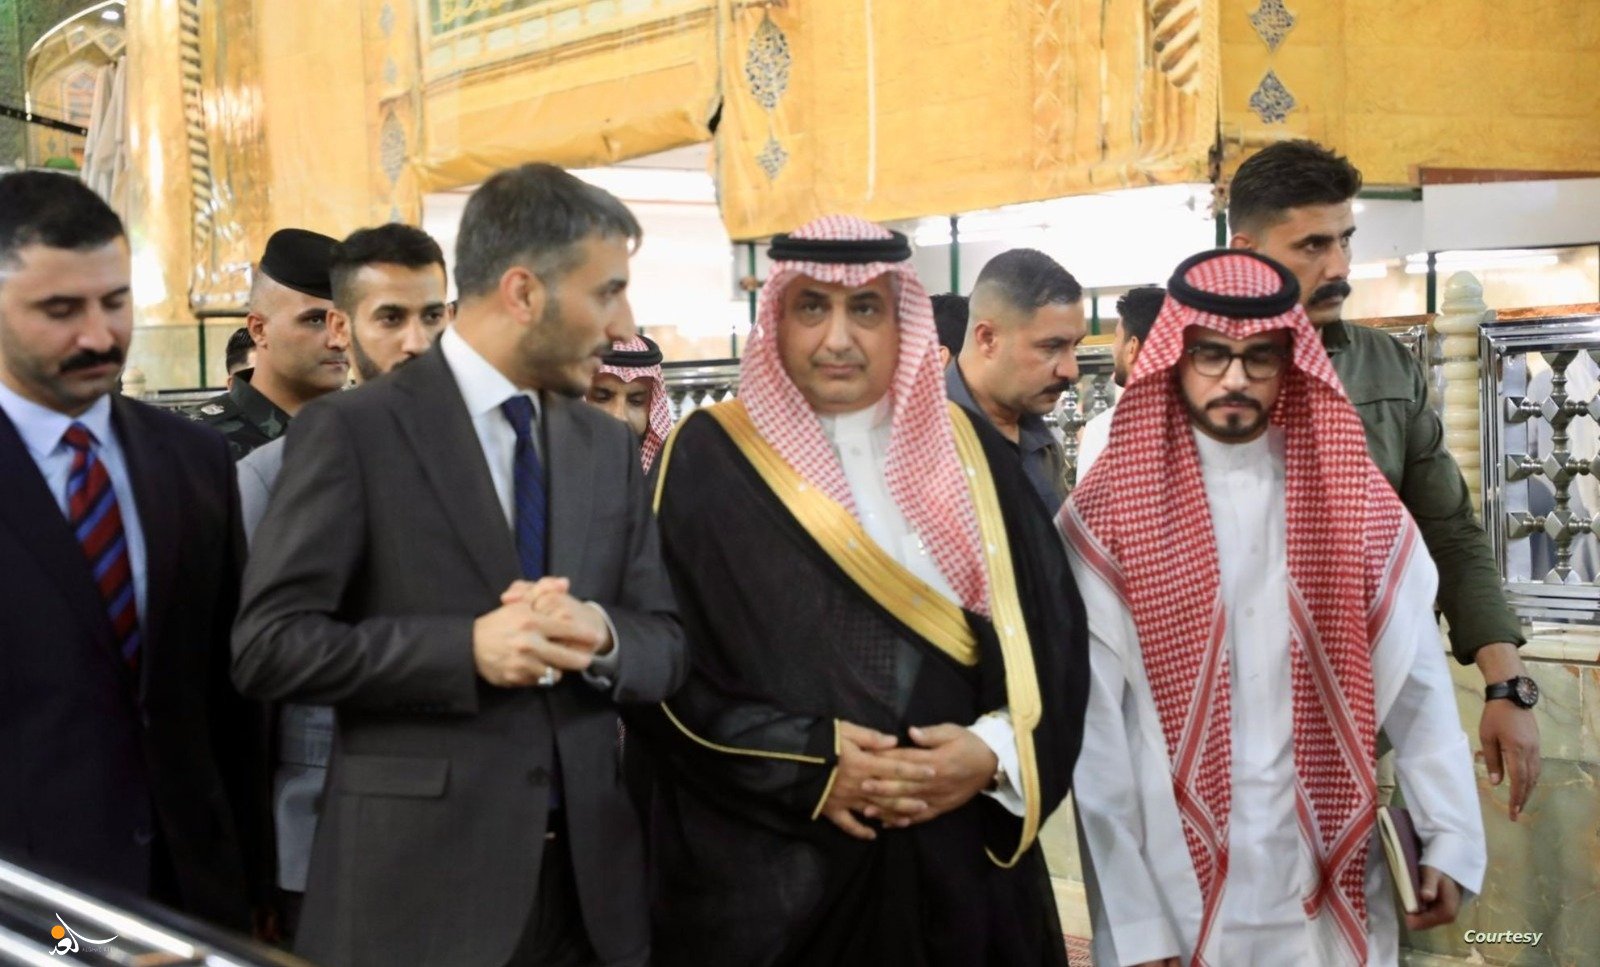 مقالة سعودية: العلاقات بين الرياض وشيعة العراق في مرحلة مزدهرة وجديدة